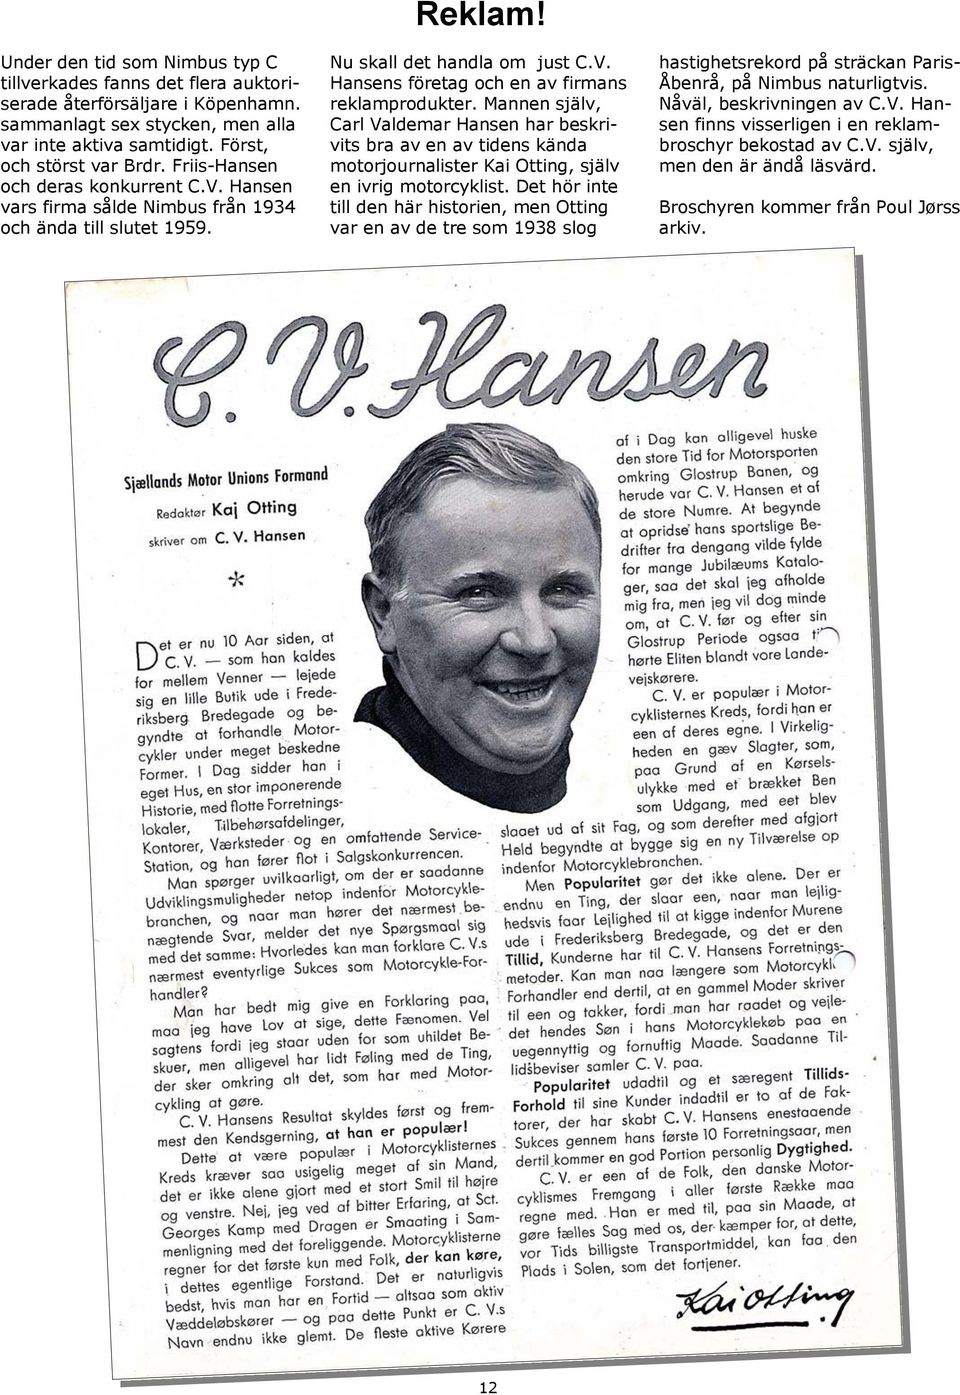 Mannen själv, Carl Valdemar Hansen har beskrivits bra av en av tidens kända motorjournalister Kai Otting, själv en ivrig motorcyklist.